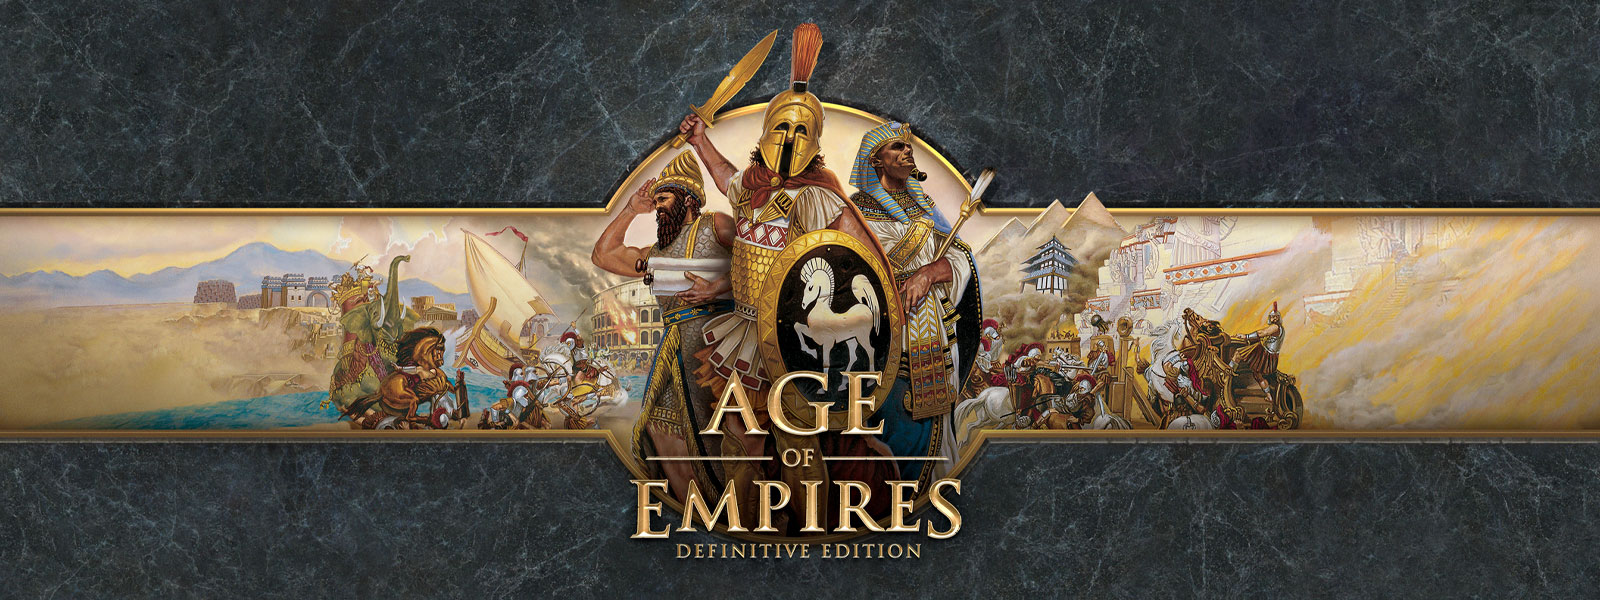 Age of Empires: Definitive Edition emblémája szürke háttérrel, háborús vezérekkel és seregeikkel